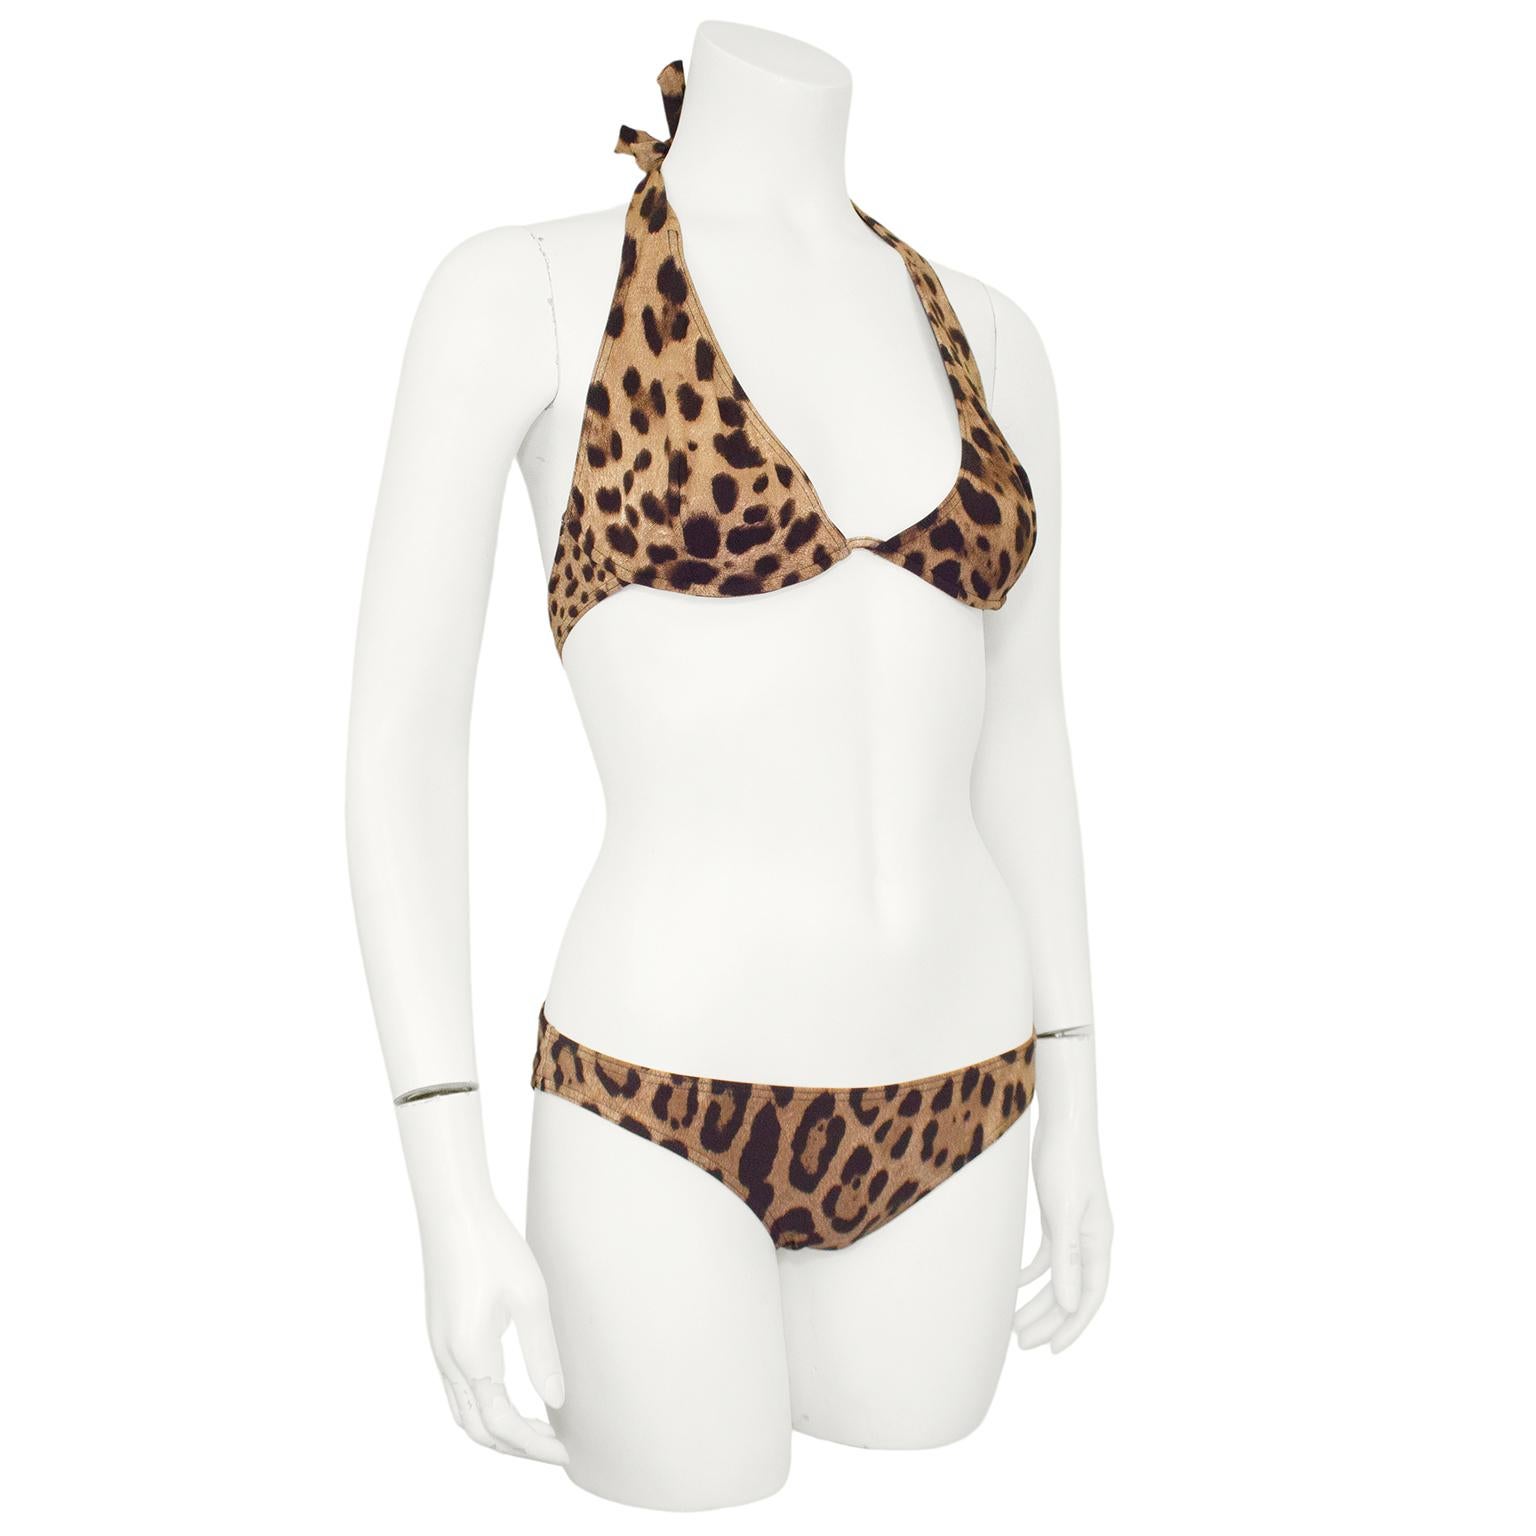 Bikini imprimé léopard Dolce and Gabbana Beachwear des années 2000. Top dos nu avec armatures et fermoir en métal doré DG entrelacé. Bas de bikini à taille basse. Doublure noire. Marquée taille 3, elle s'ajuste comme une taille US 2-4. Fabriquées en